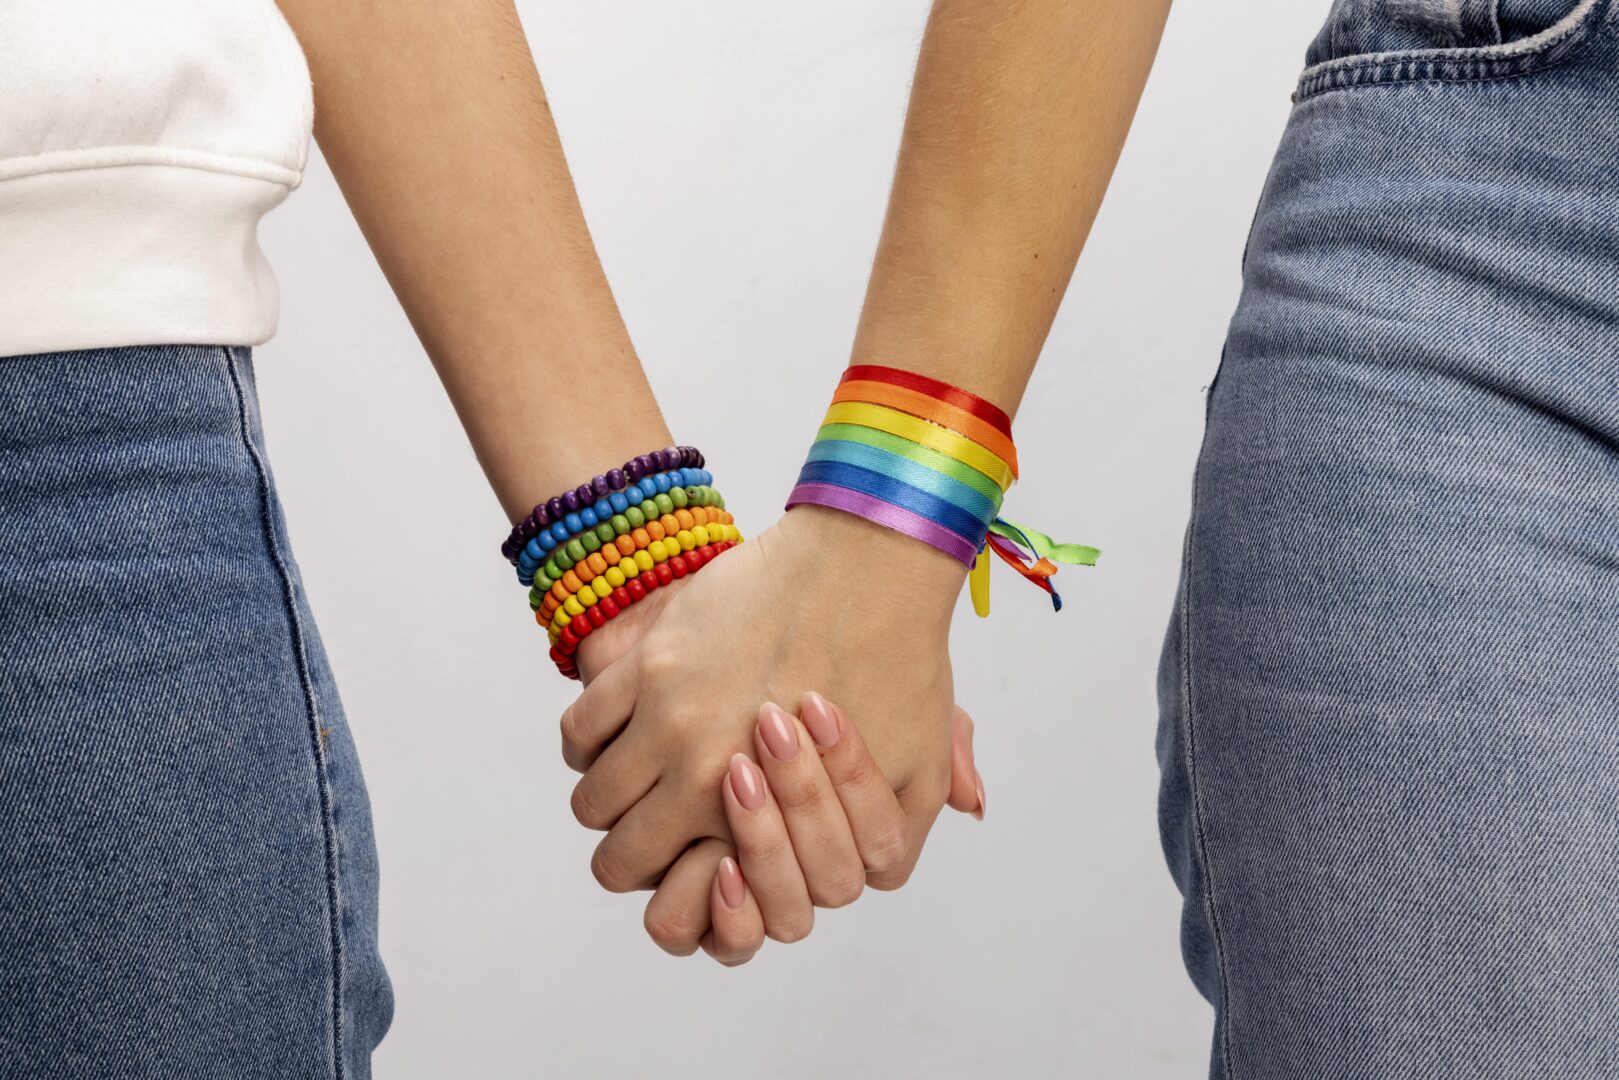 Featured image for “PL 508/007: Projeto visa alterar regras da união homoafetiva”